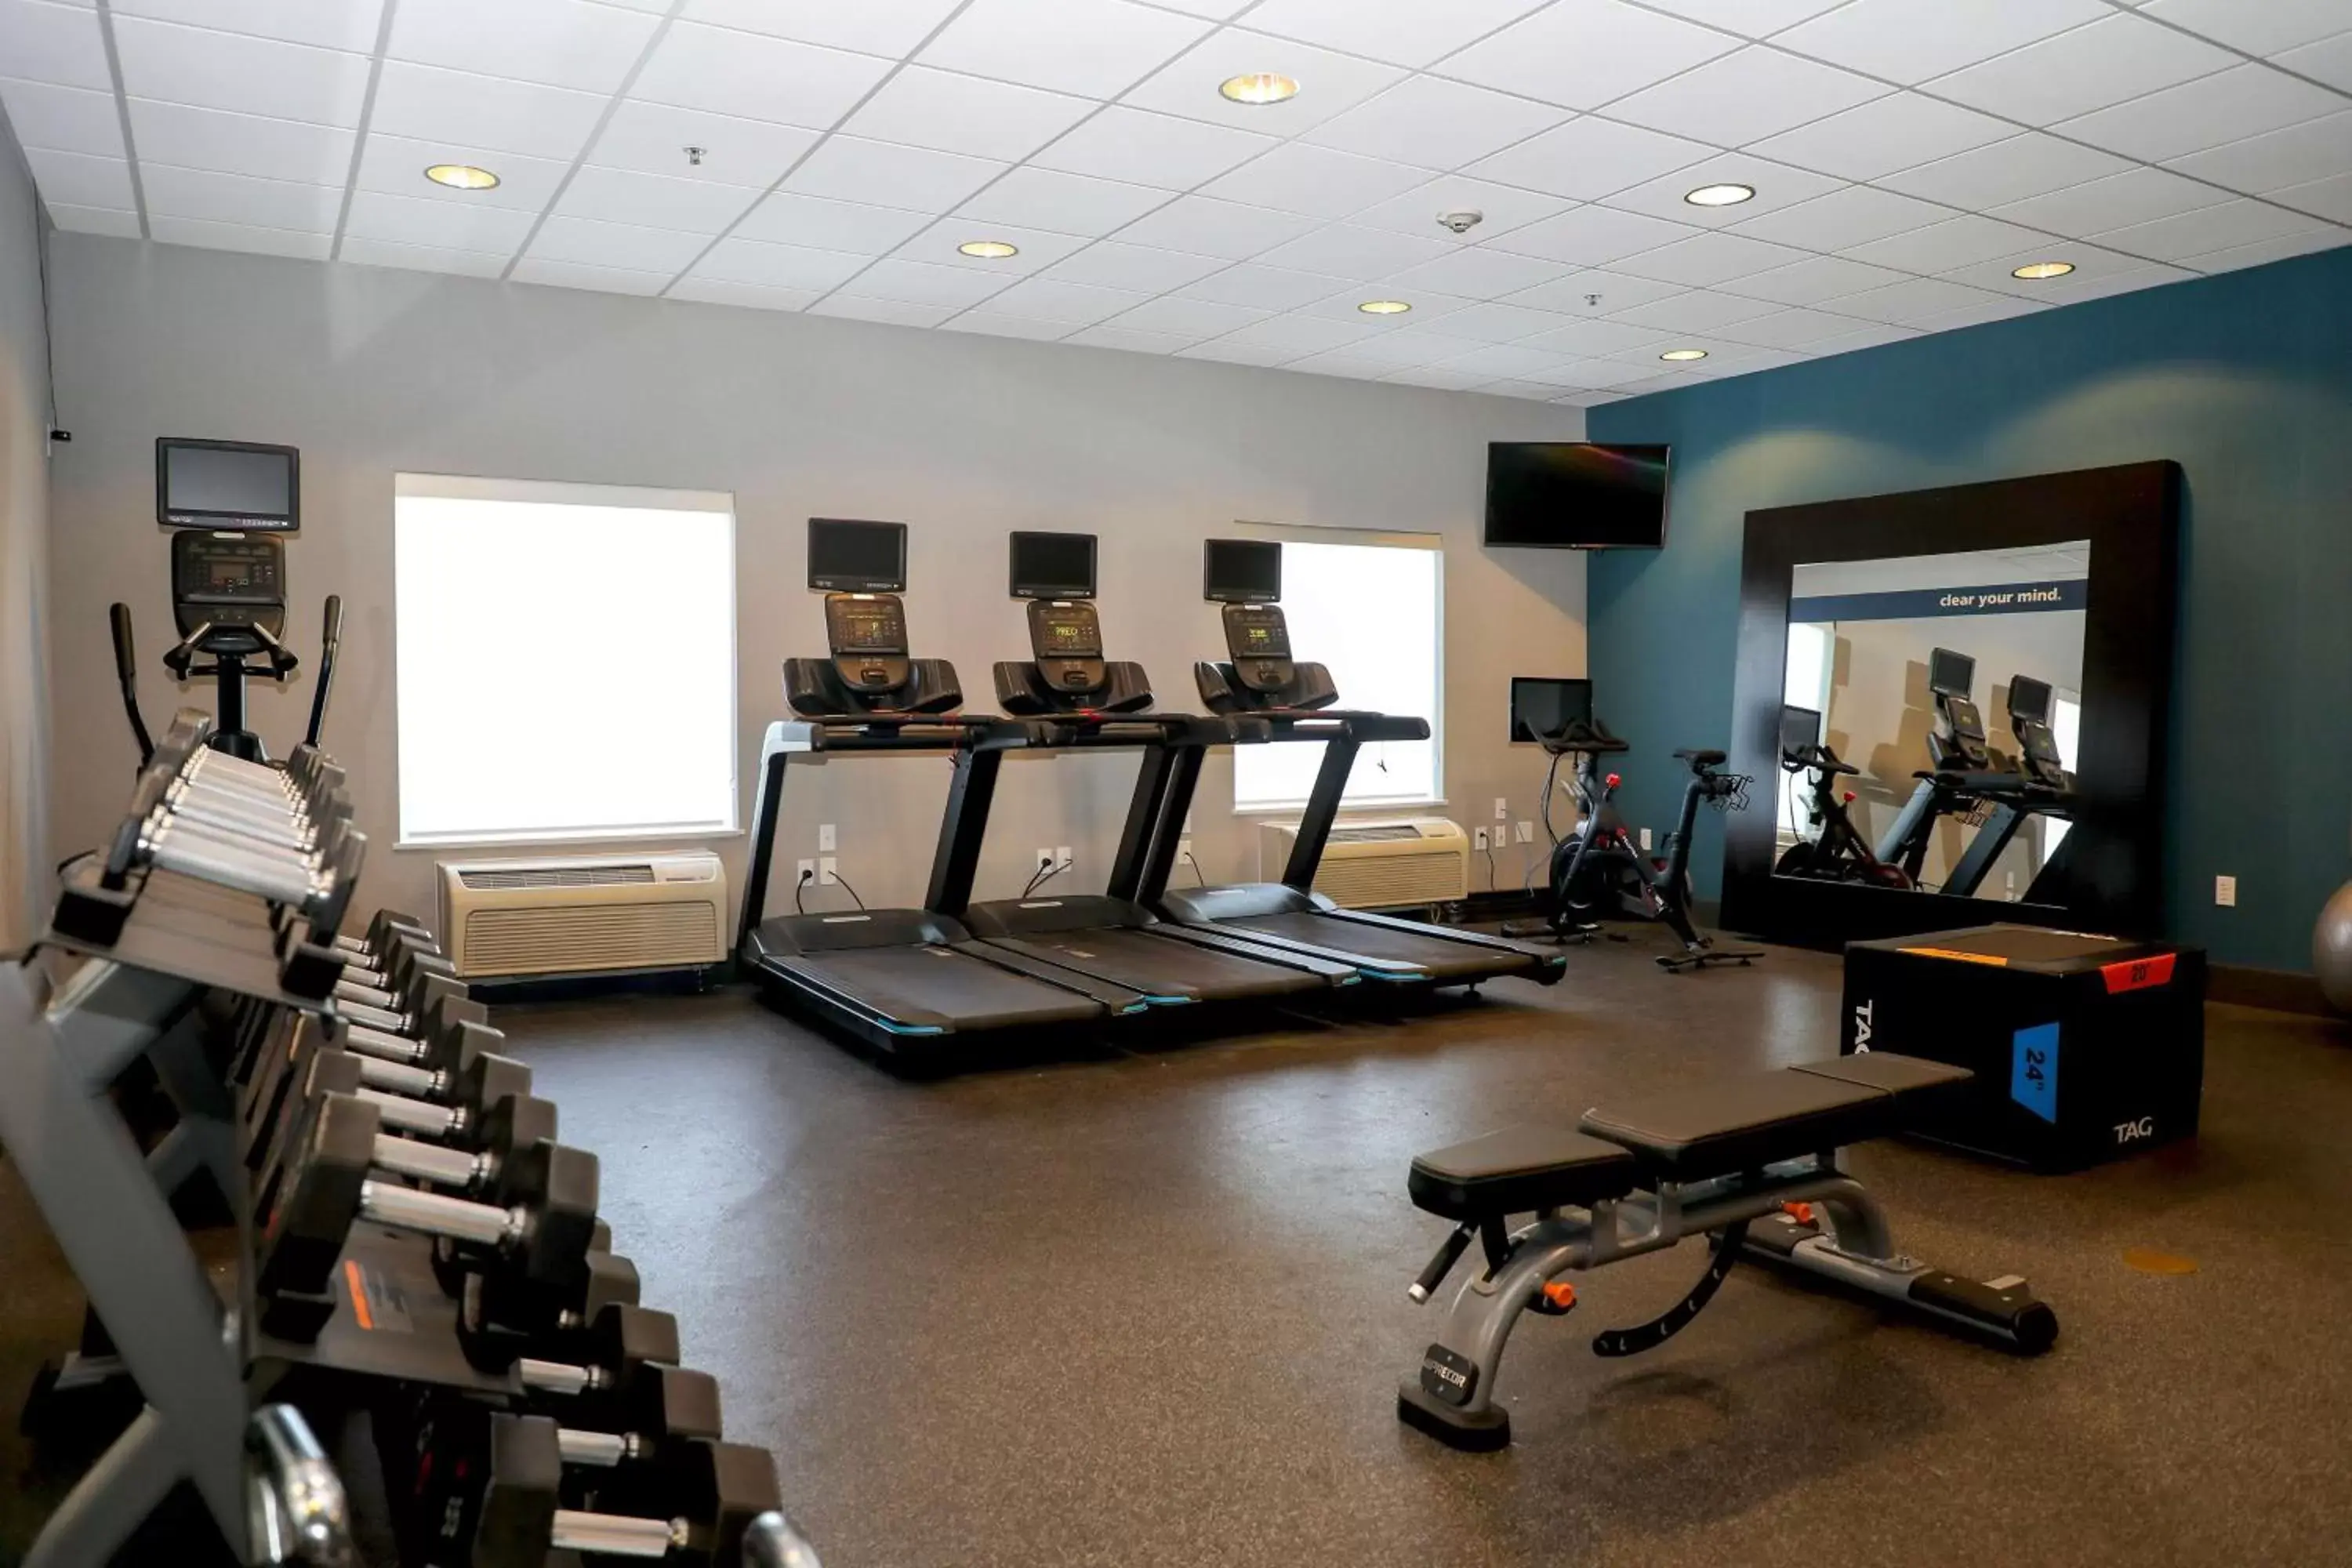 Fitness centre/facilities, Fitness Center/Facilities in Hampton Inn Ellensburg